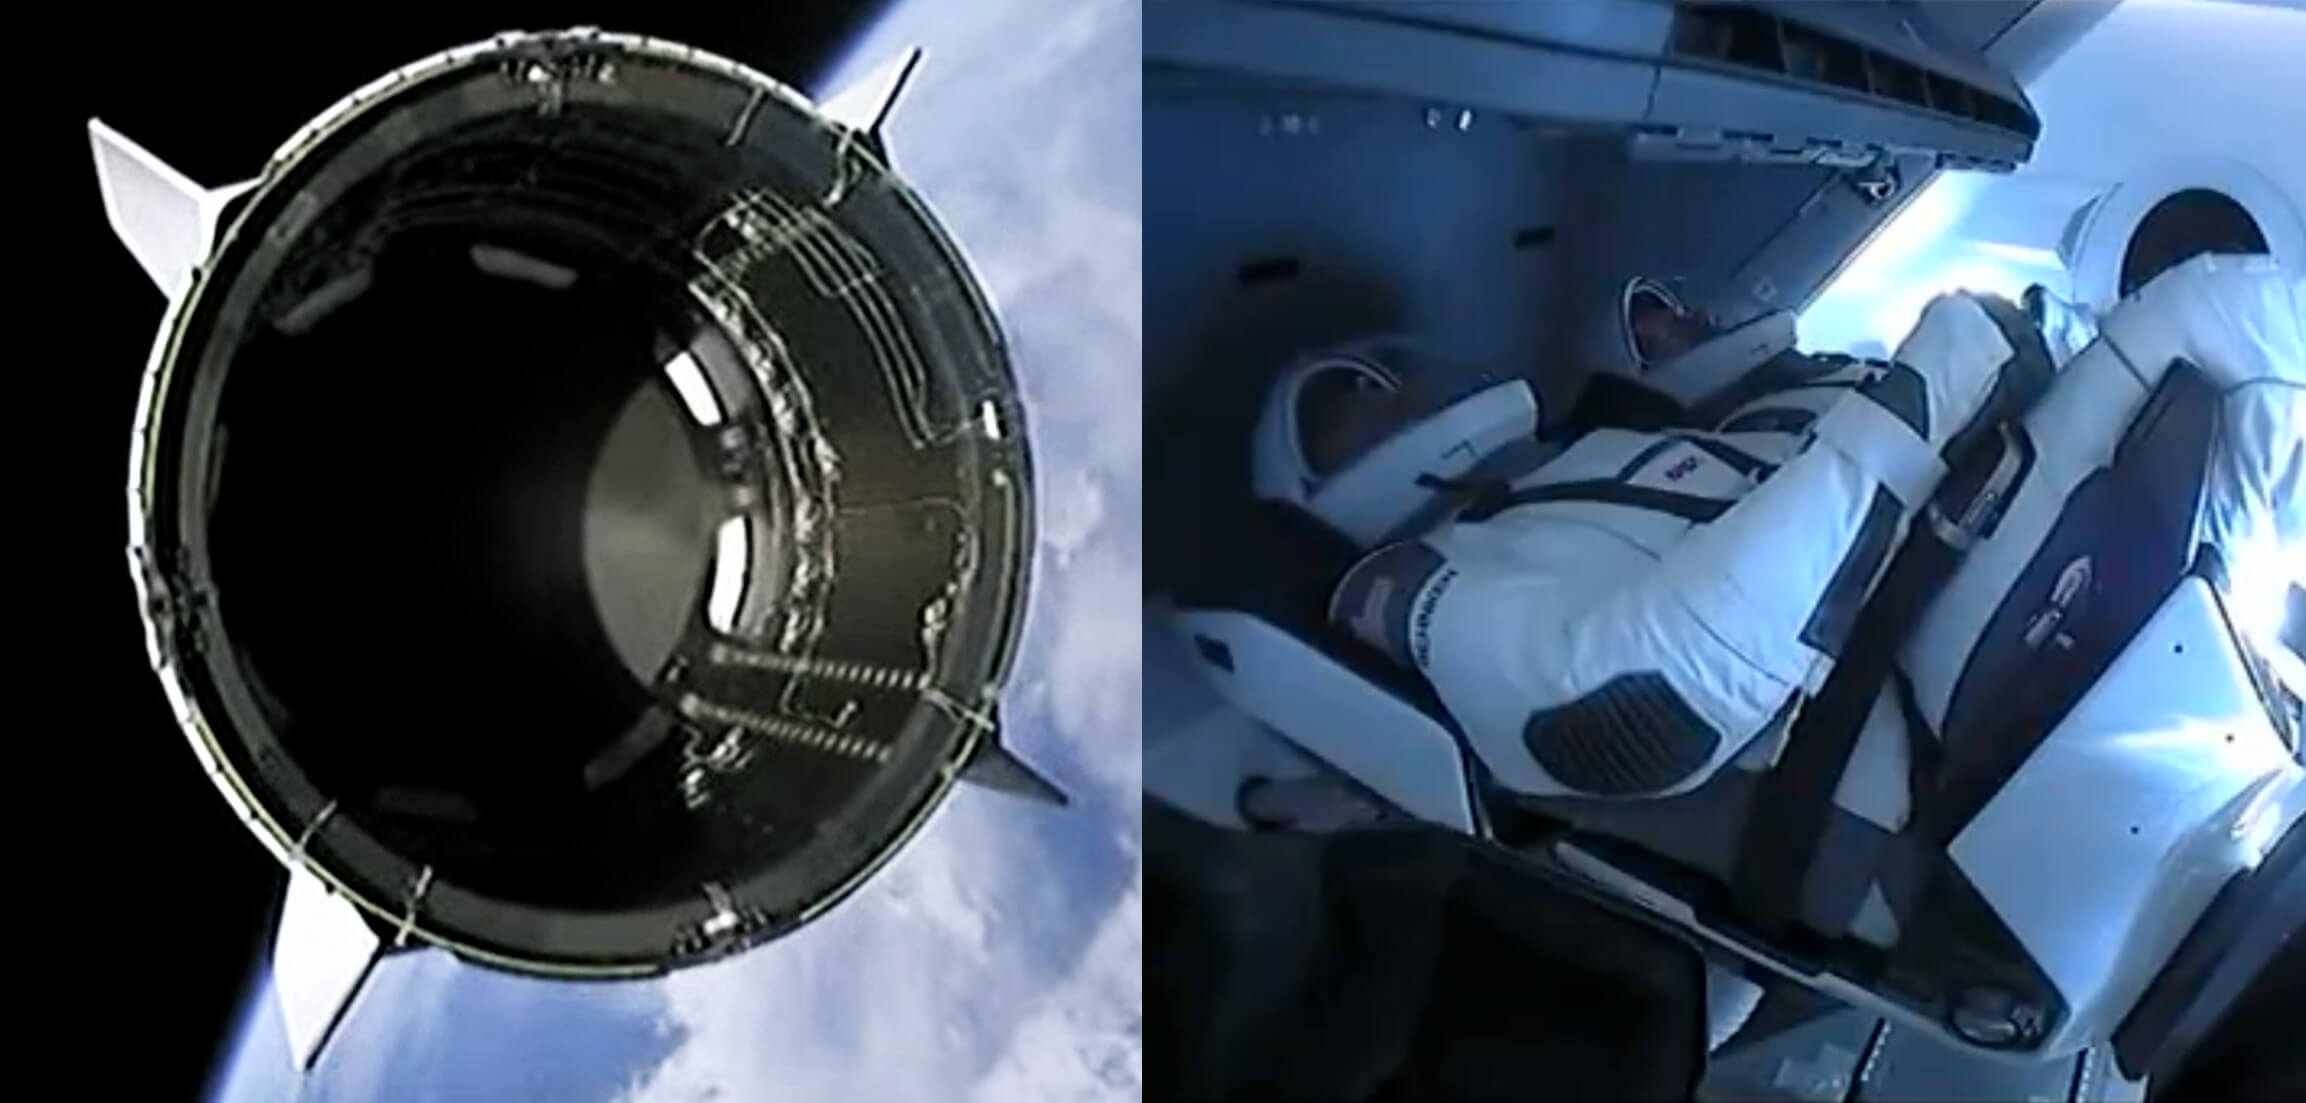 سبيس اكس أطلقت التنين طاقم السفينة مصنوعة نجاح الالتحام مع محطة الفضاء الدولية